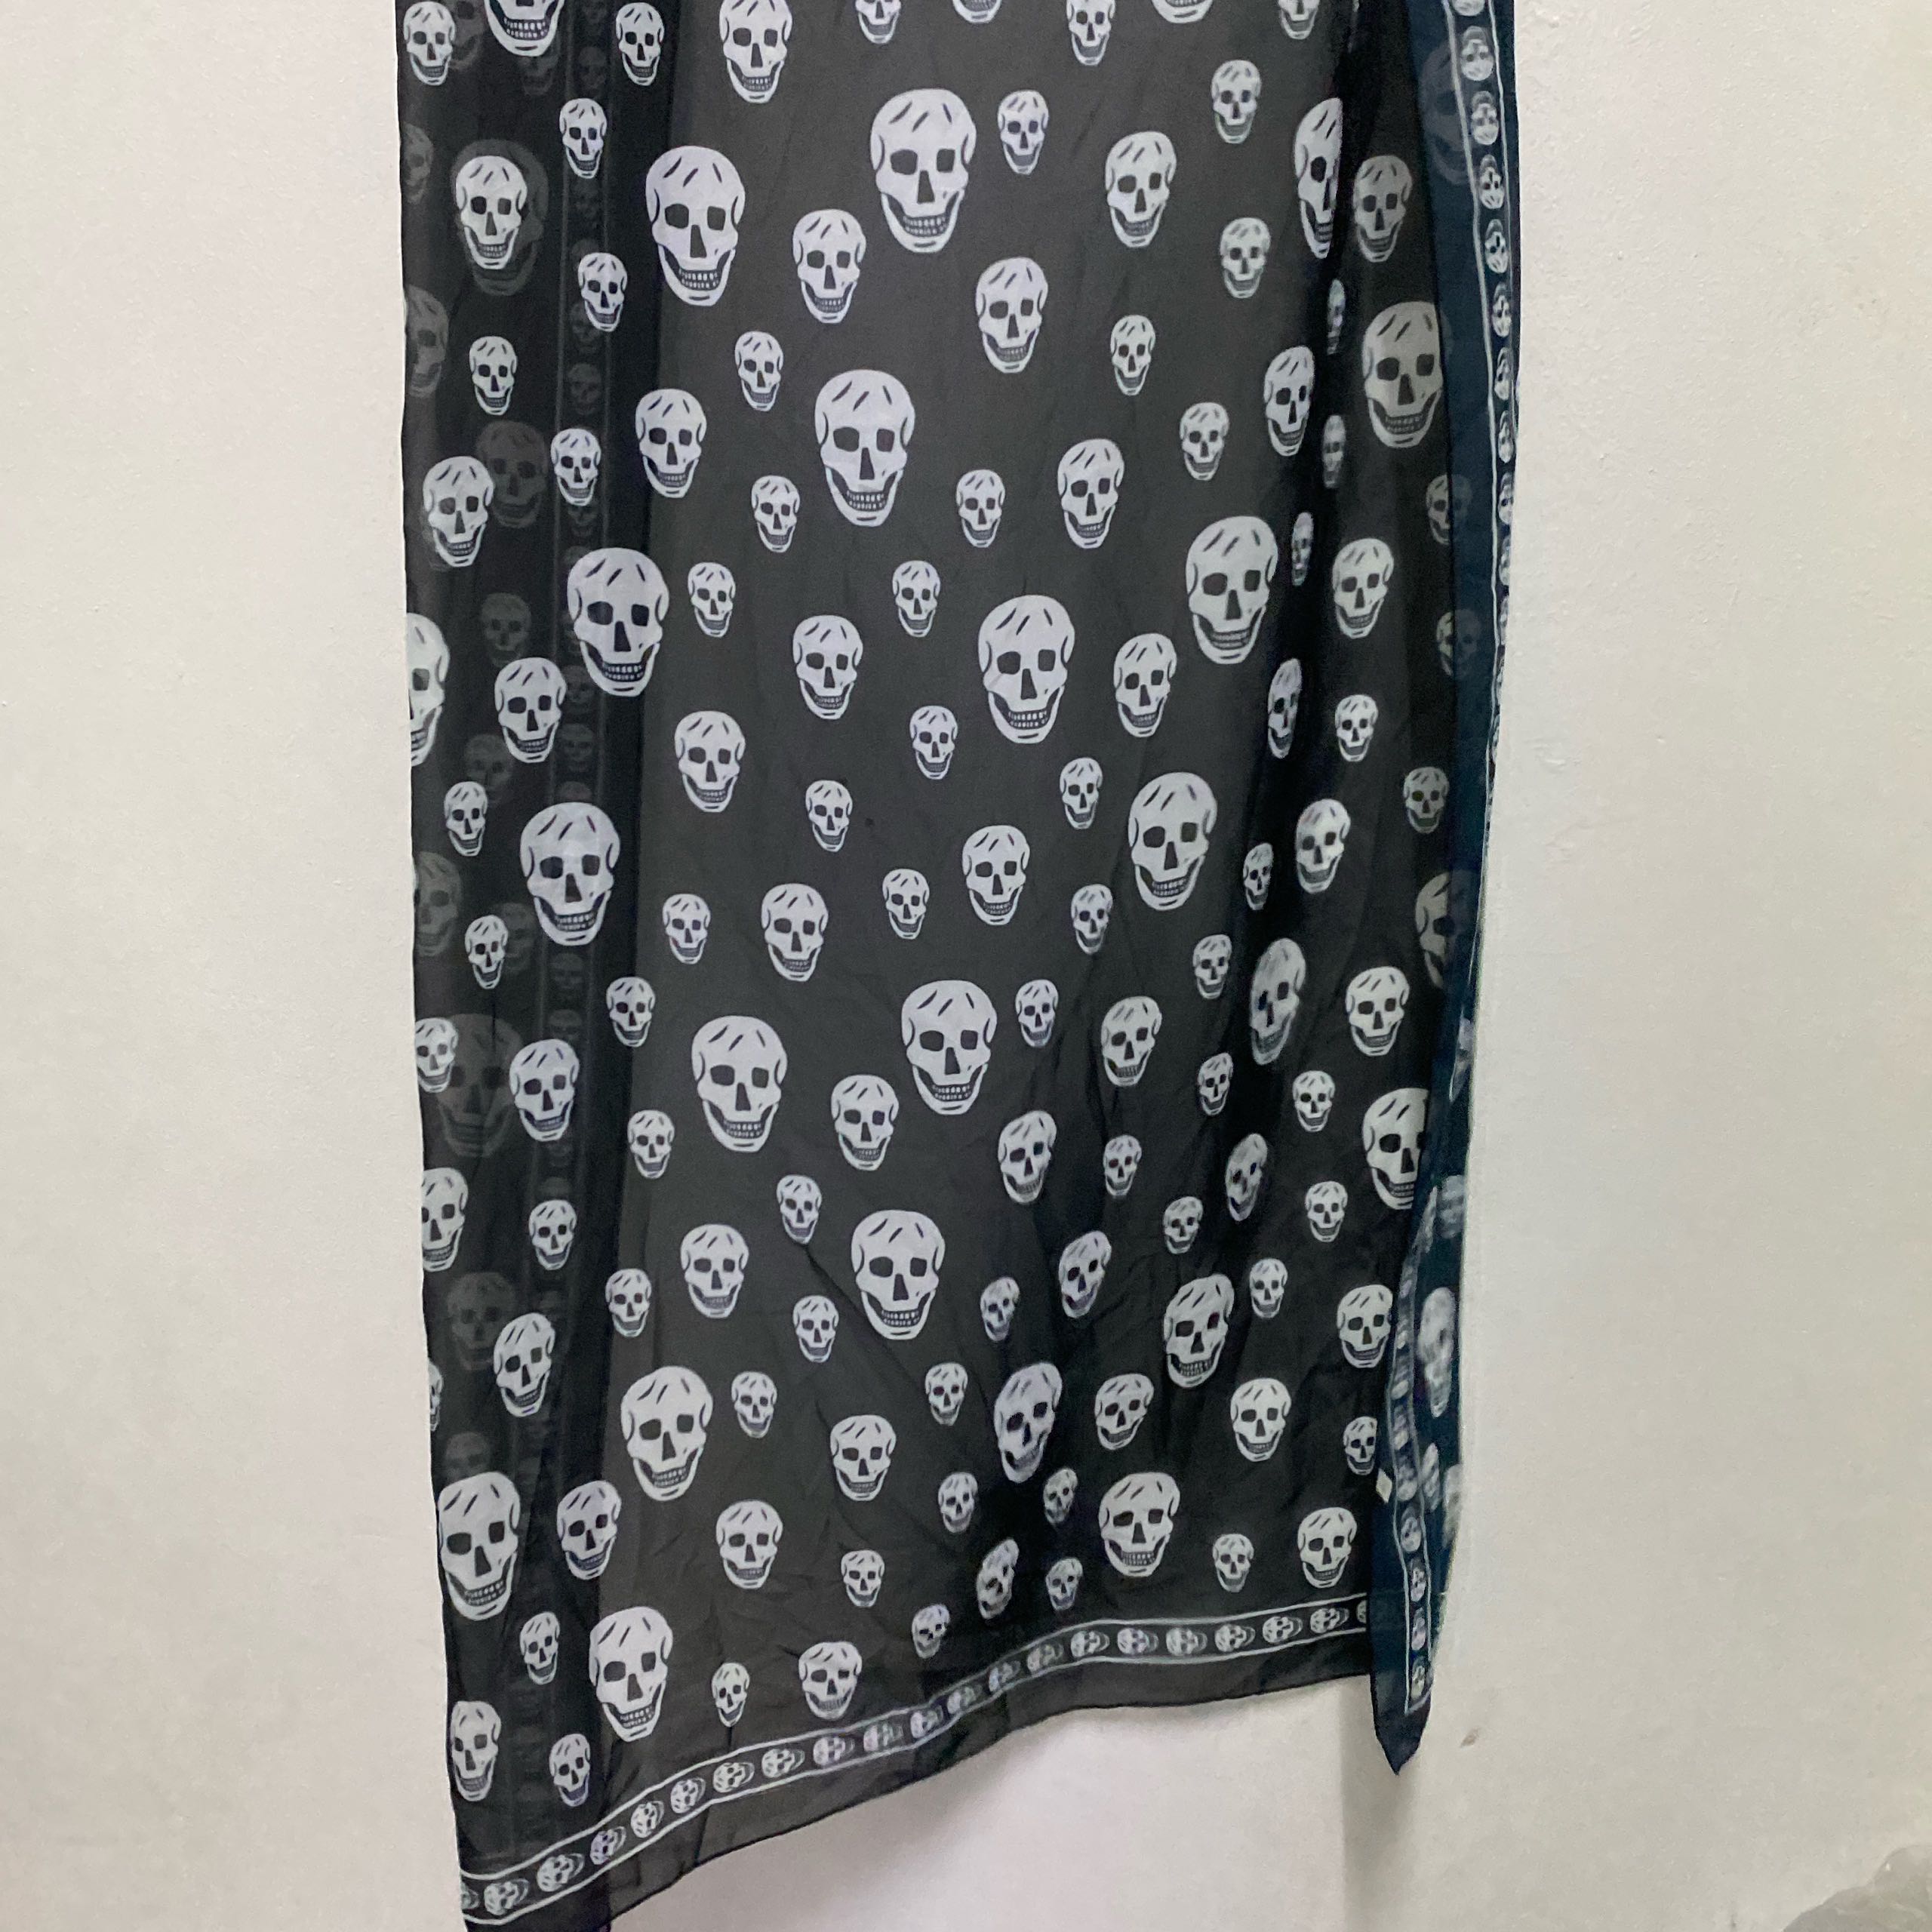 JapaneseBrand skull scarf  - 3